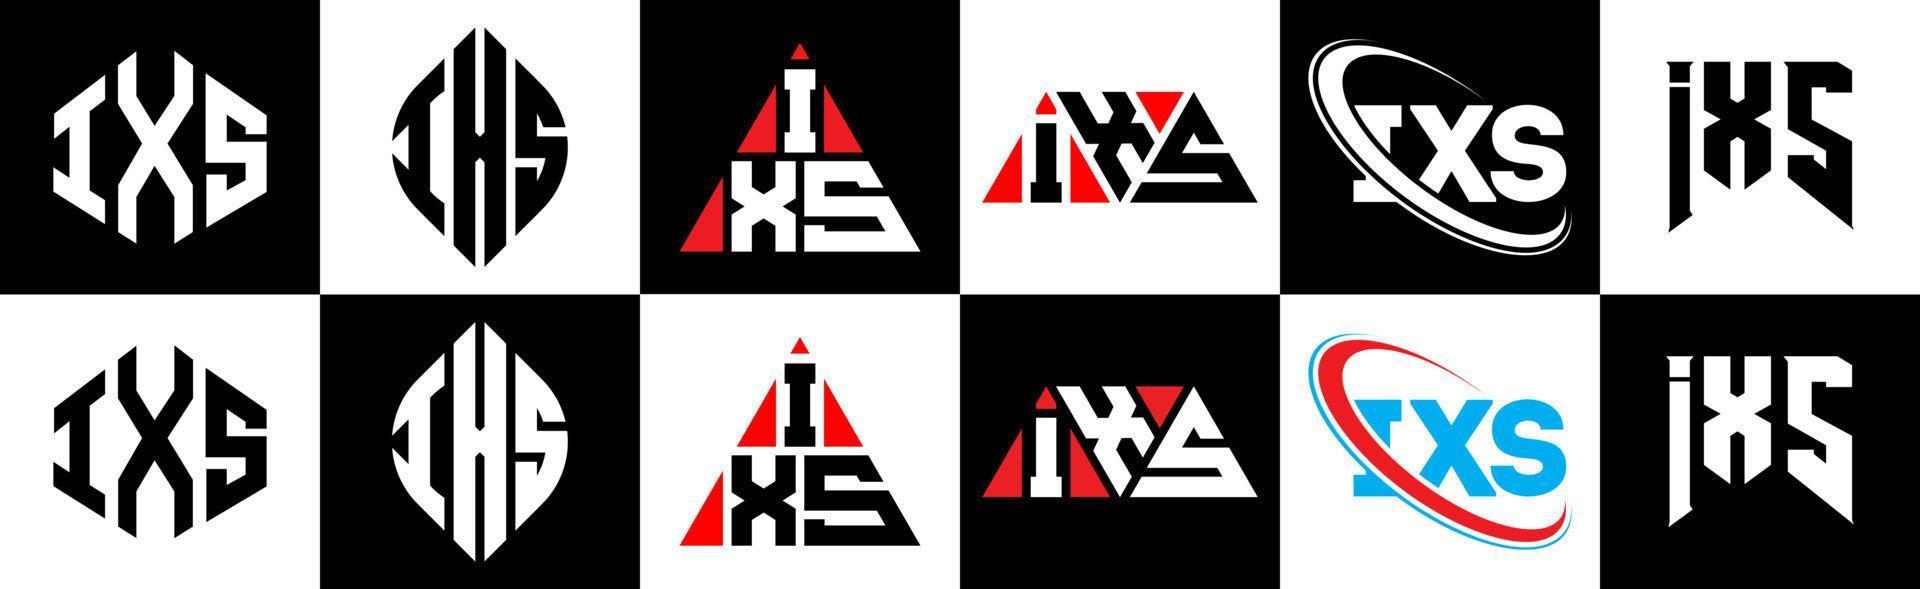 Diseño de logotipo de letra ixs en seis estilos. polígono ixs, círculo, triángulo, hexágono, estilo plano y simple con logotipo de letra de variación de color blanco y negro en una mesa de trabajo. logotipo minimalista y clásico de ixs vector